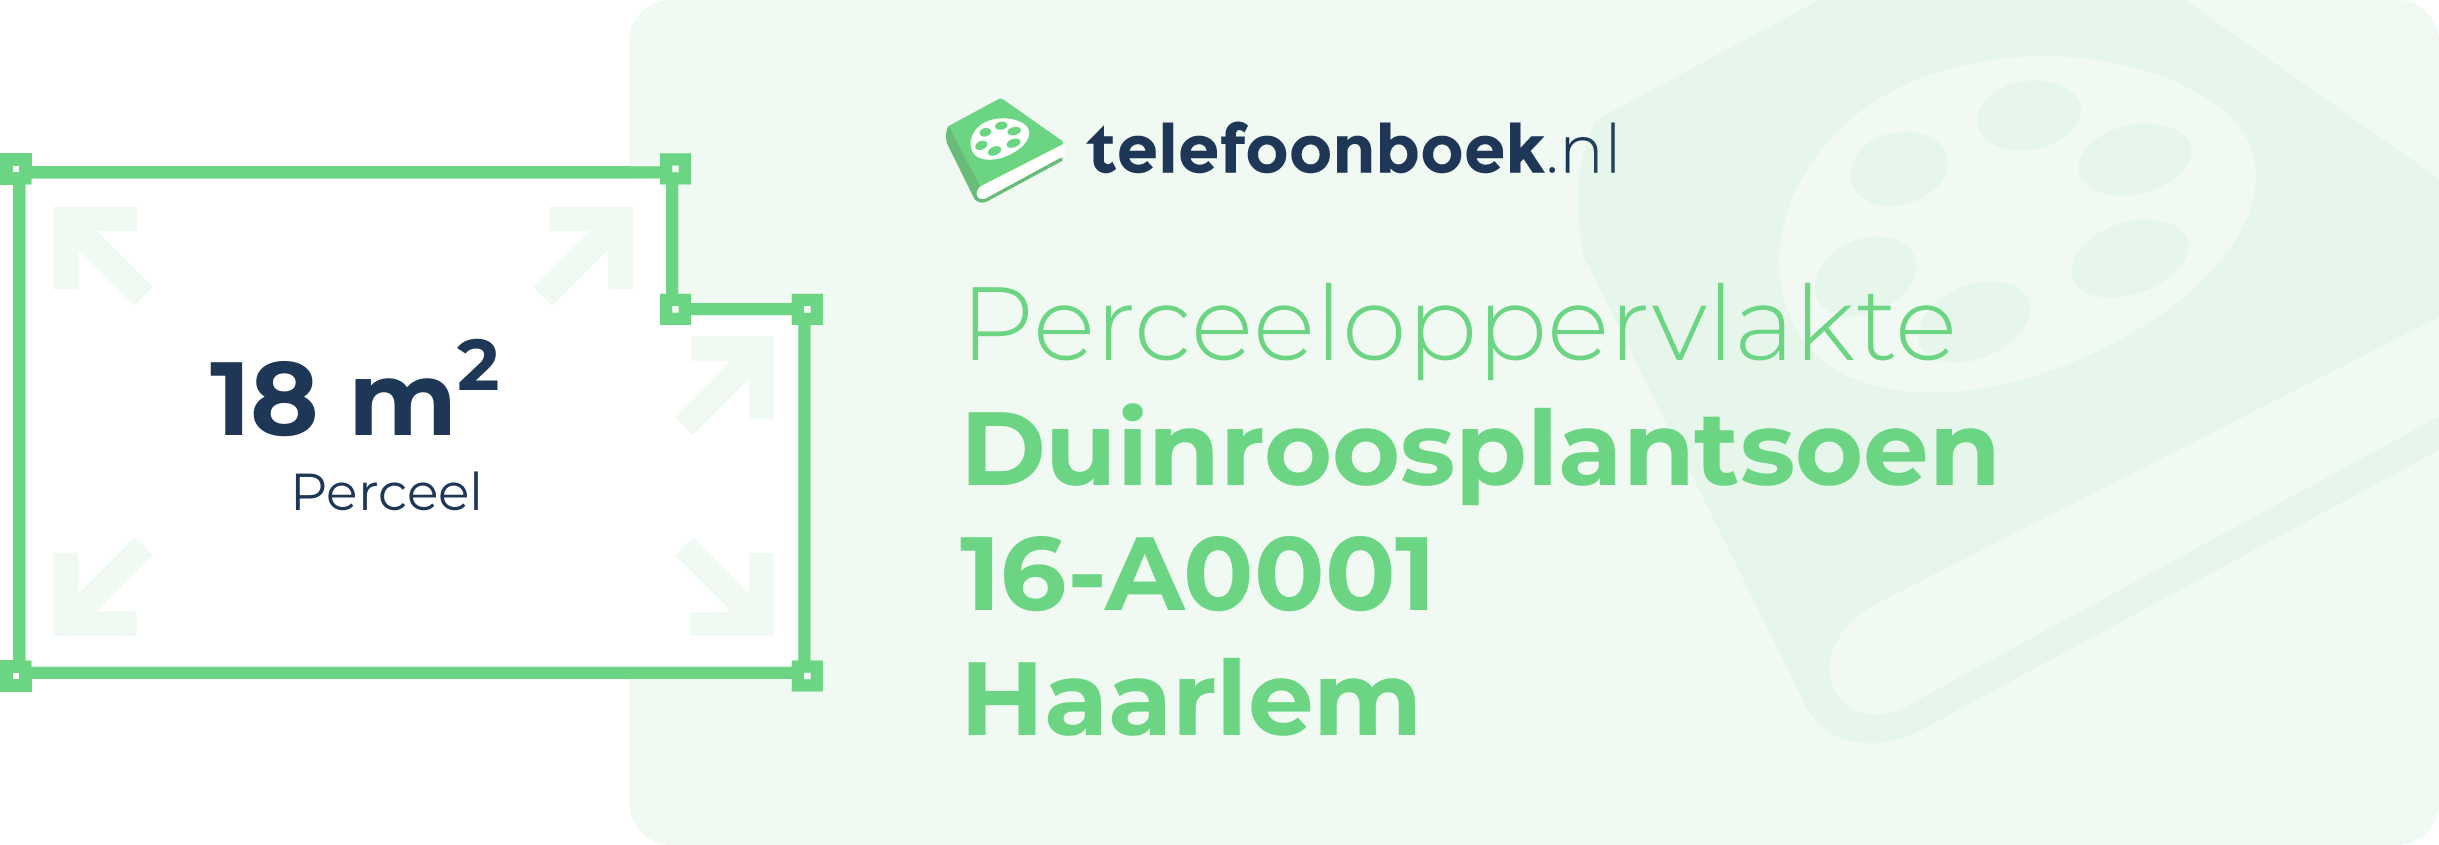 Perceeloppervlakte Duinroosplantsoen 16-A0001 Haarlem